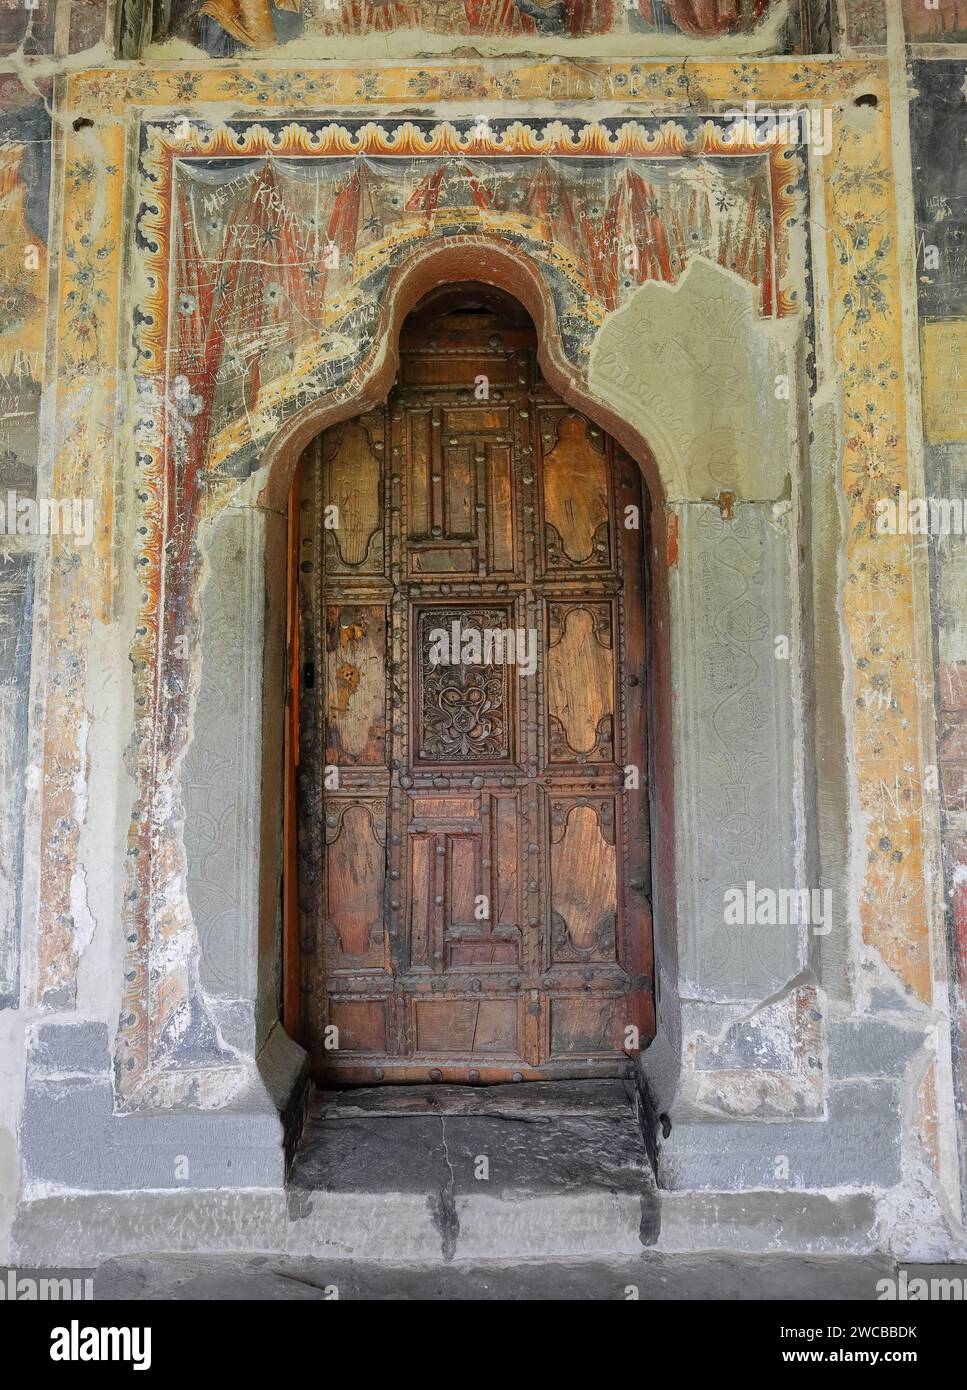 227 porta in legno intagliata, chiesa di Santa Maria di Leusa con i suoi murales vandalizzati del 1812 d.C. raffiguranti scene bibliche. Permet-Albania. Foto Stock